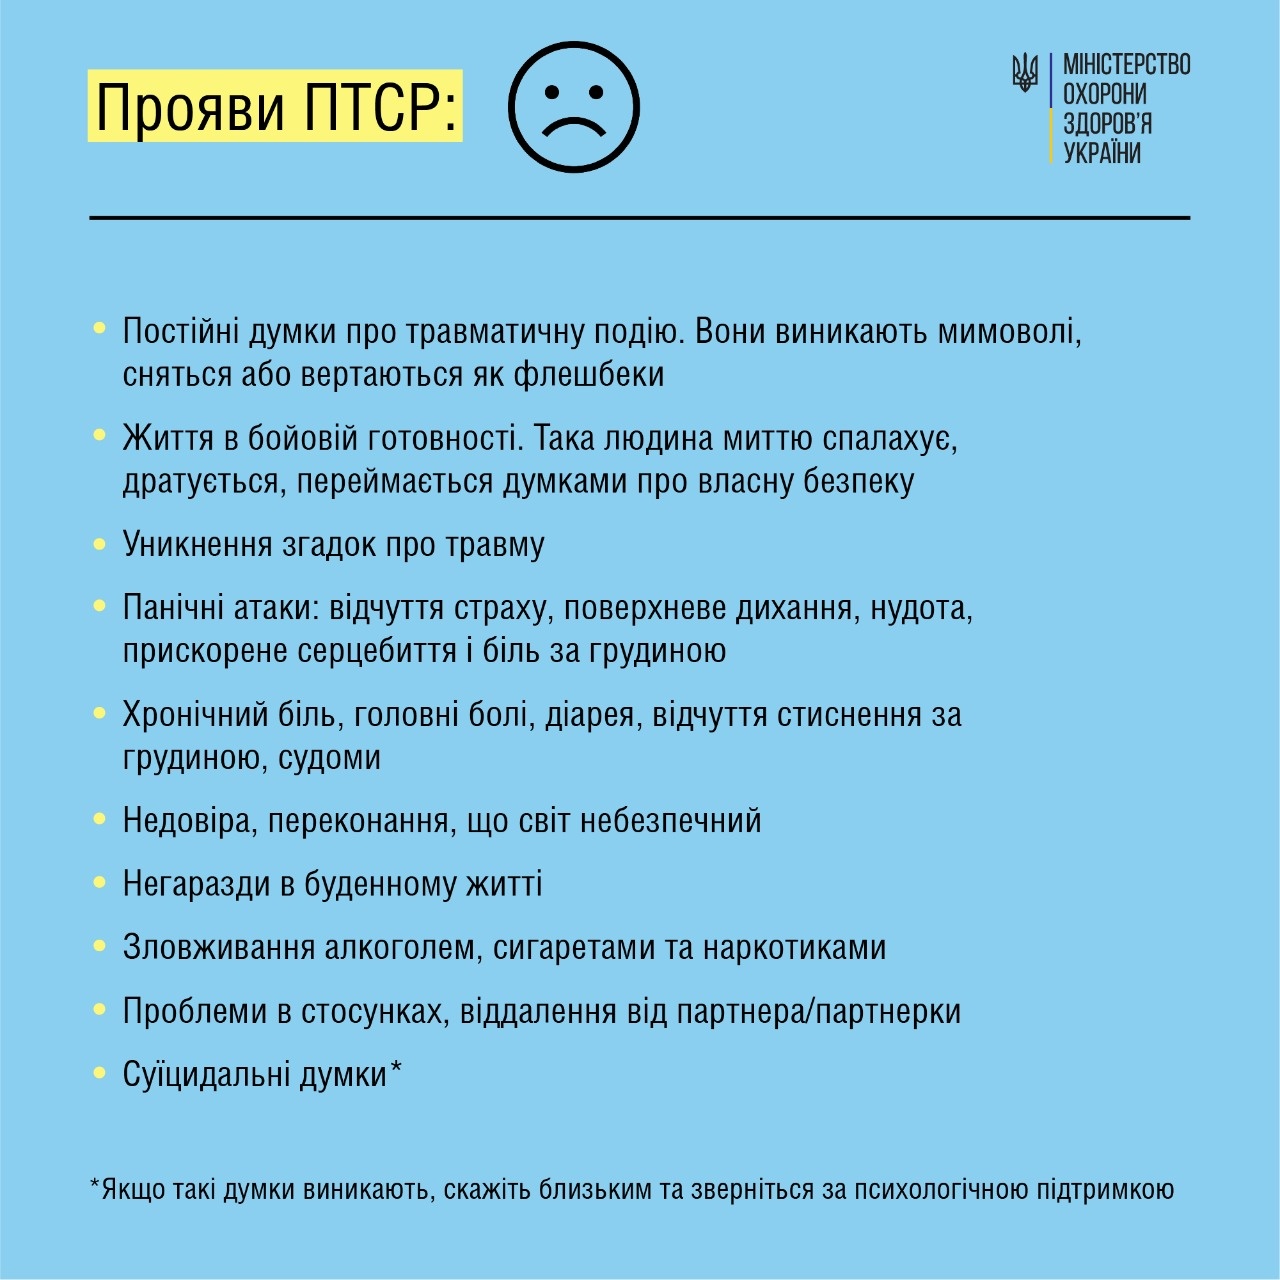 Инфографика: Міністерство охорони здоров'я України / Facebook